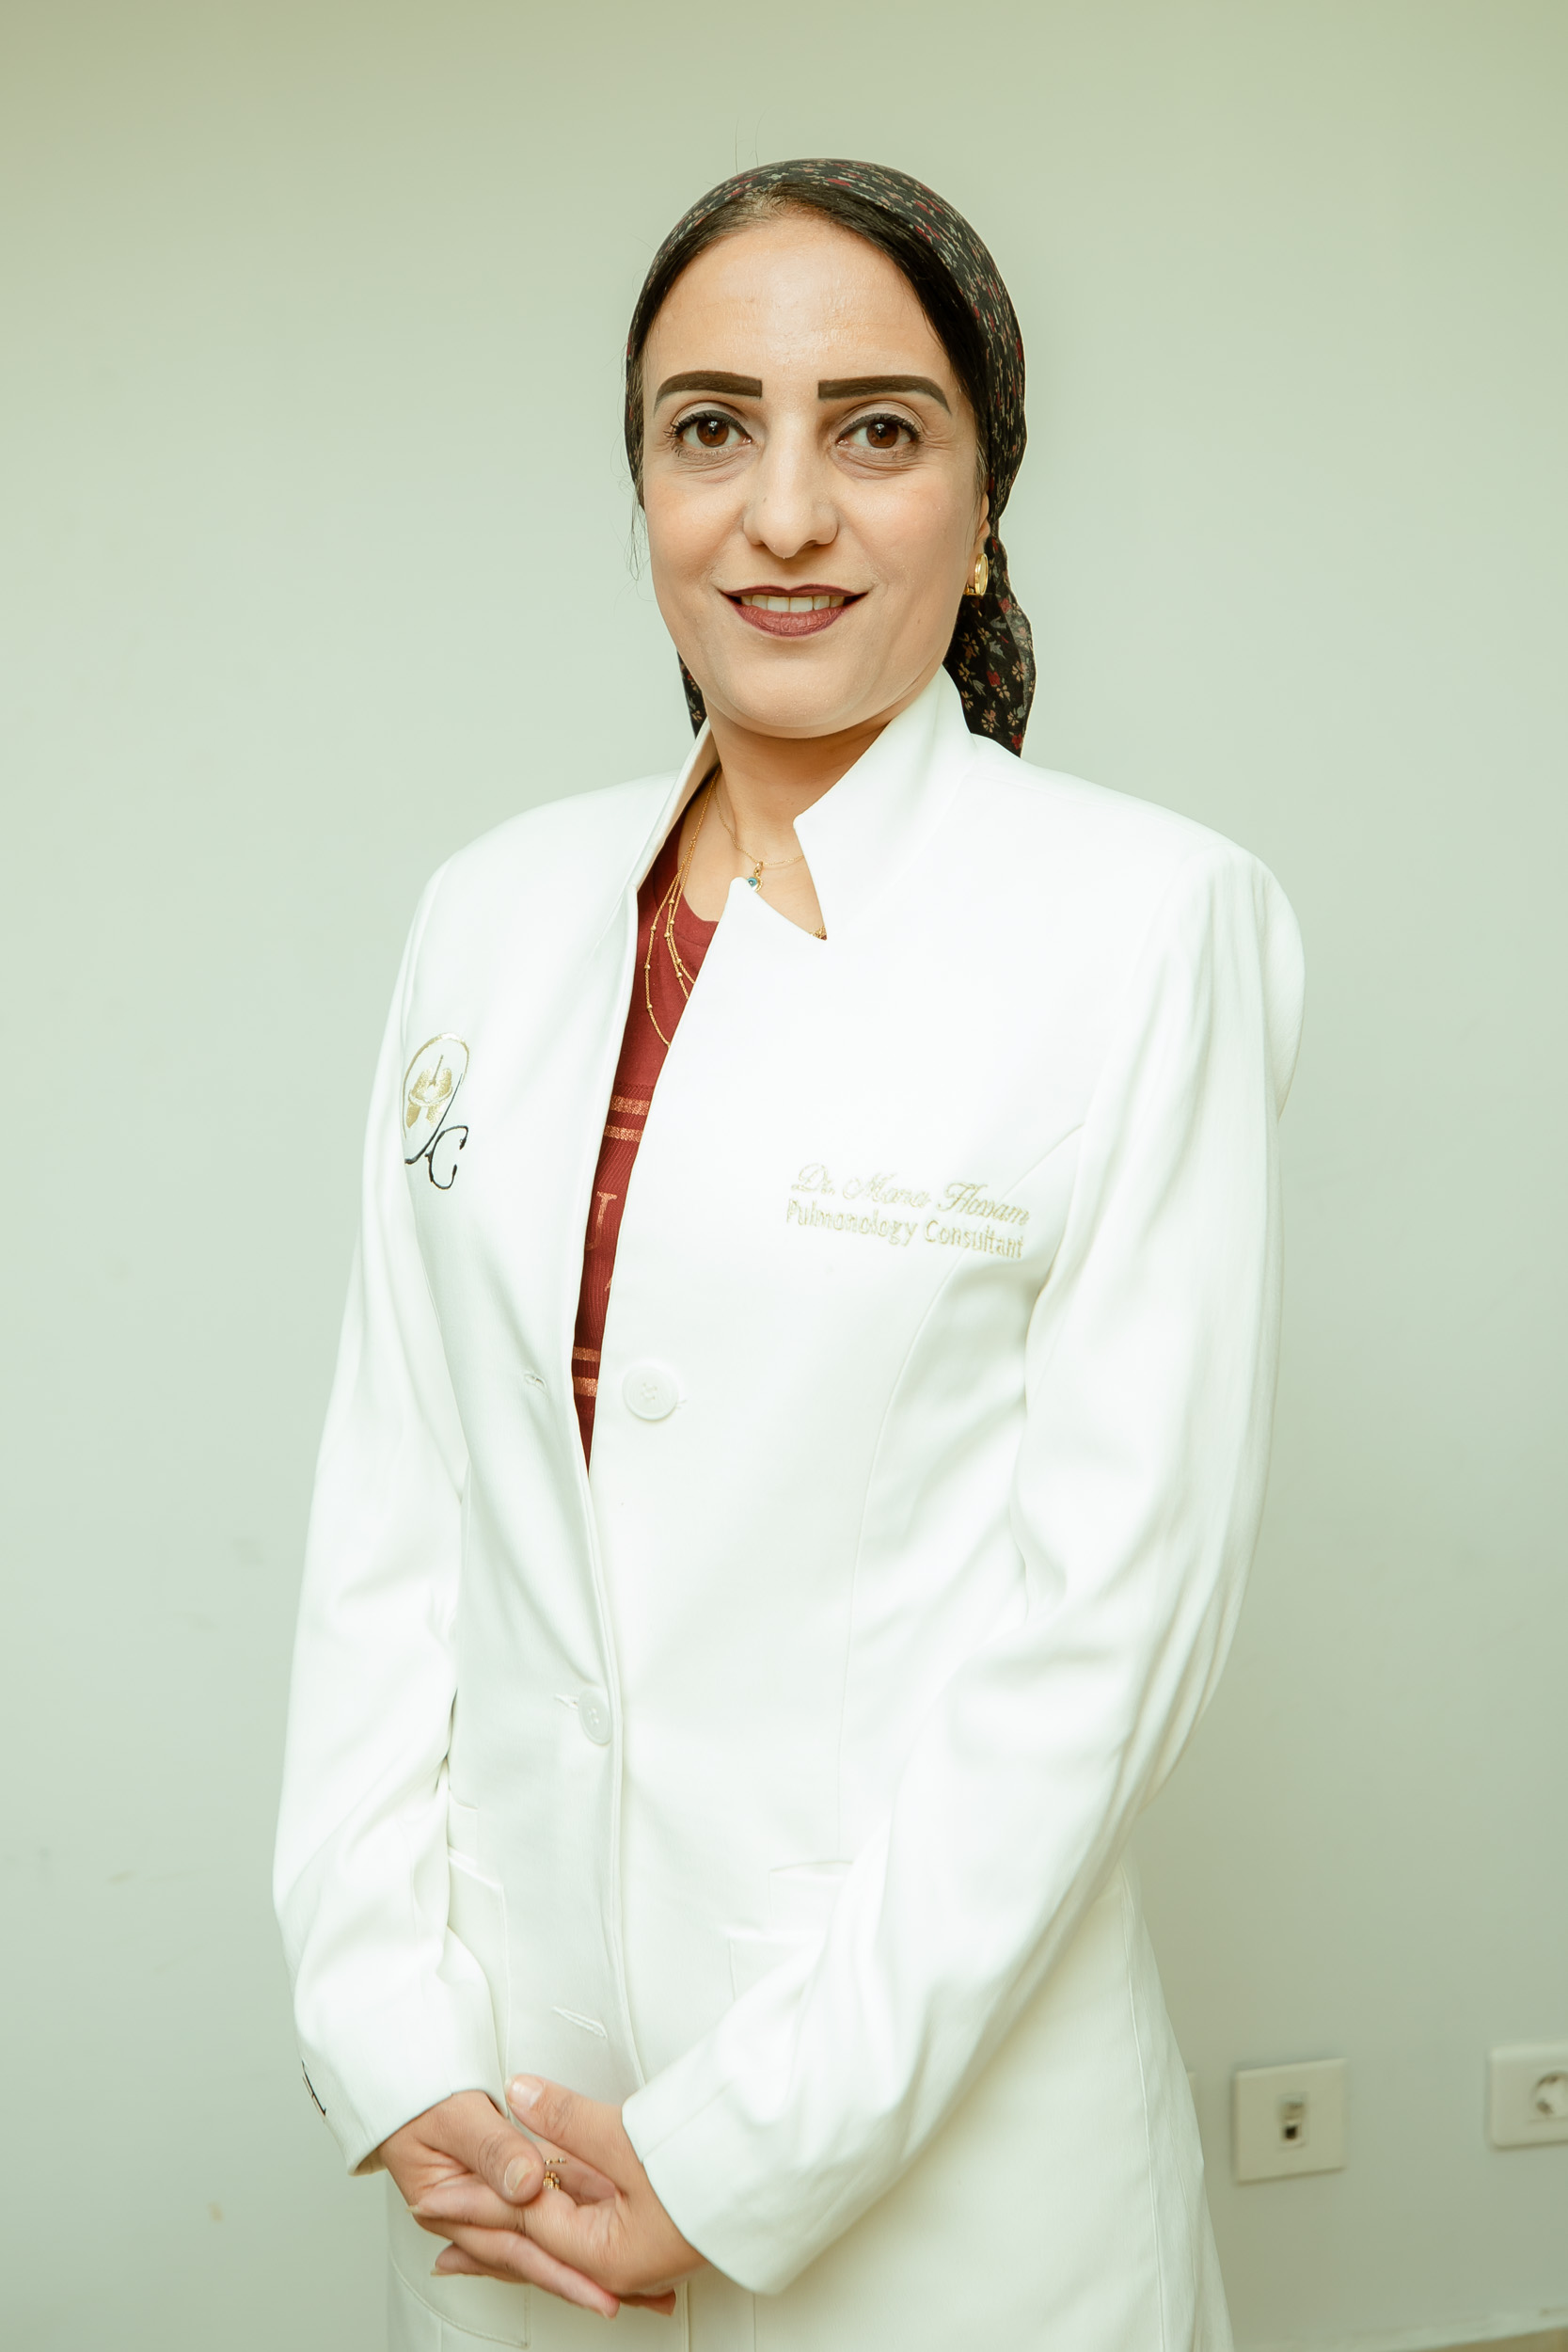 Dr. Mona Hossam